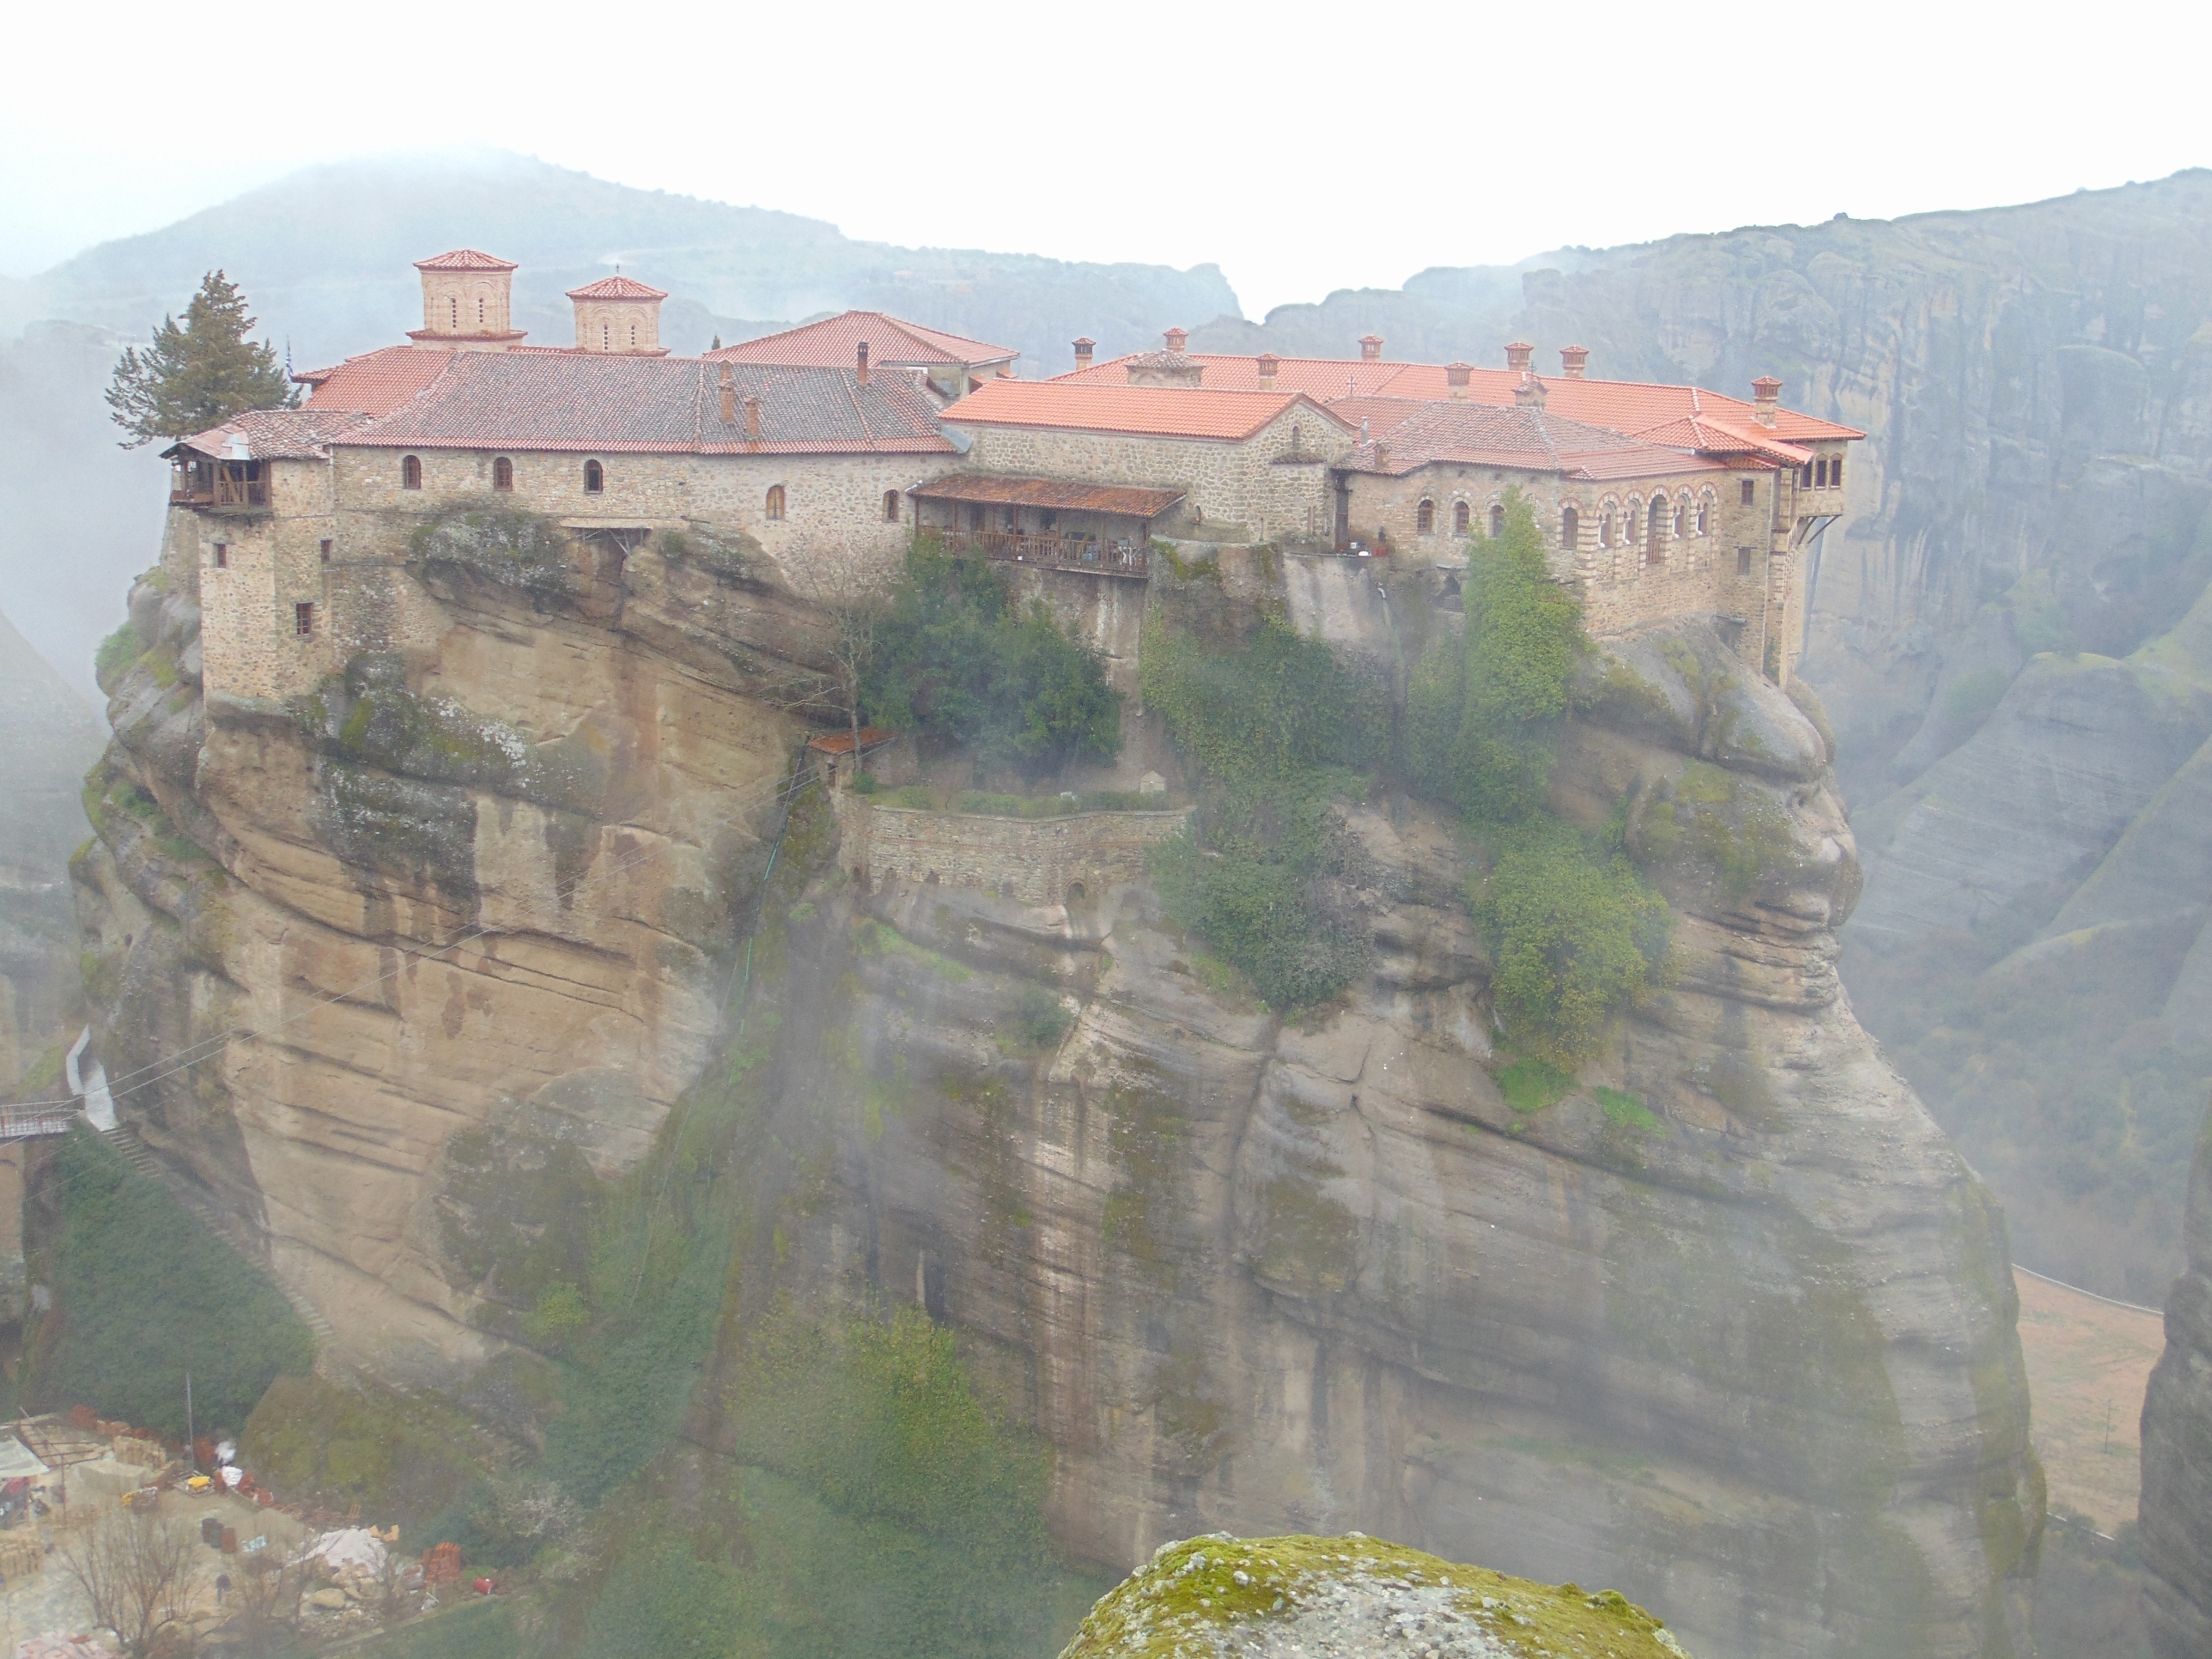 Los monasterios también fueron erigidos a semejante altura con el fin de escapar de los turcos que invadieron Grecia en la Edad Media